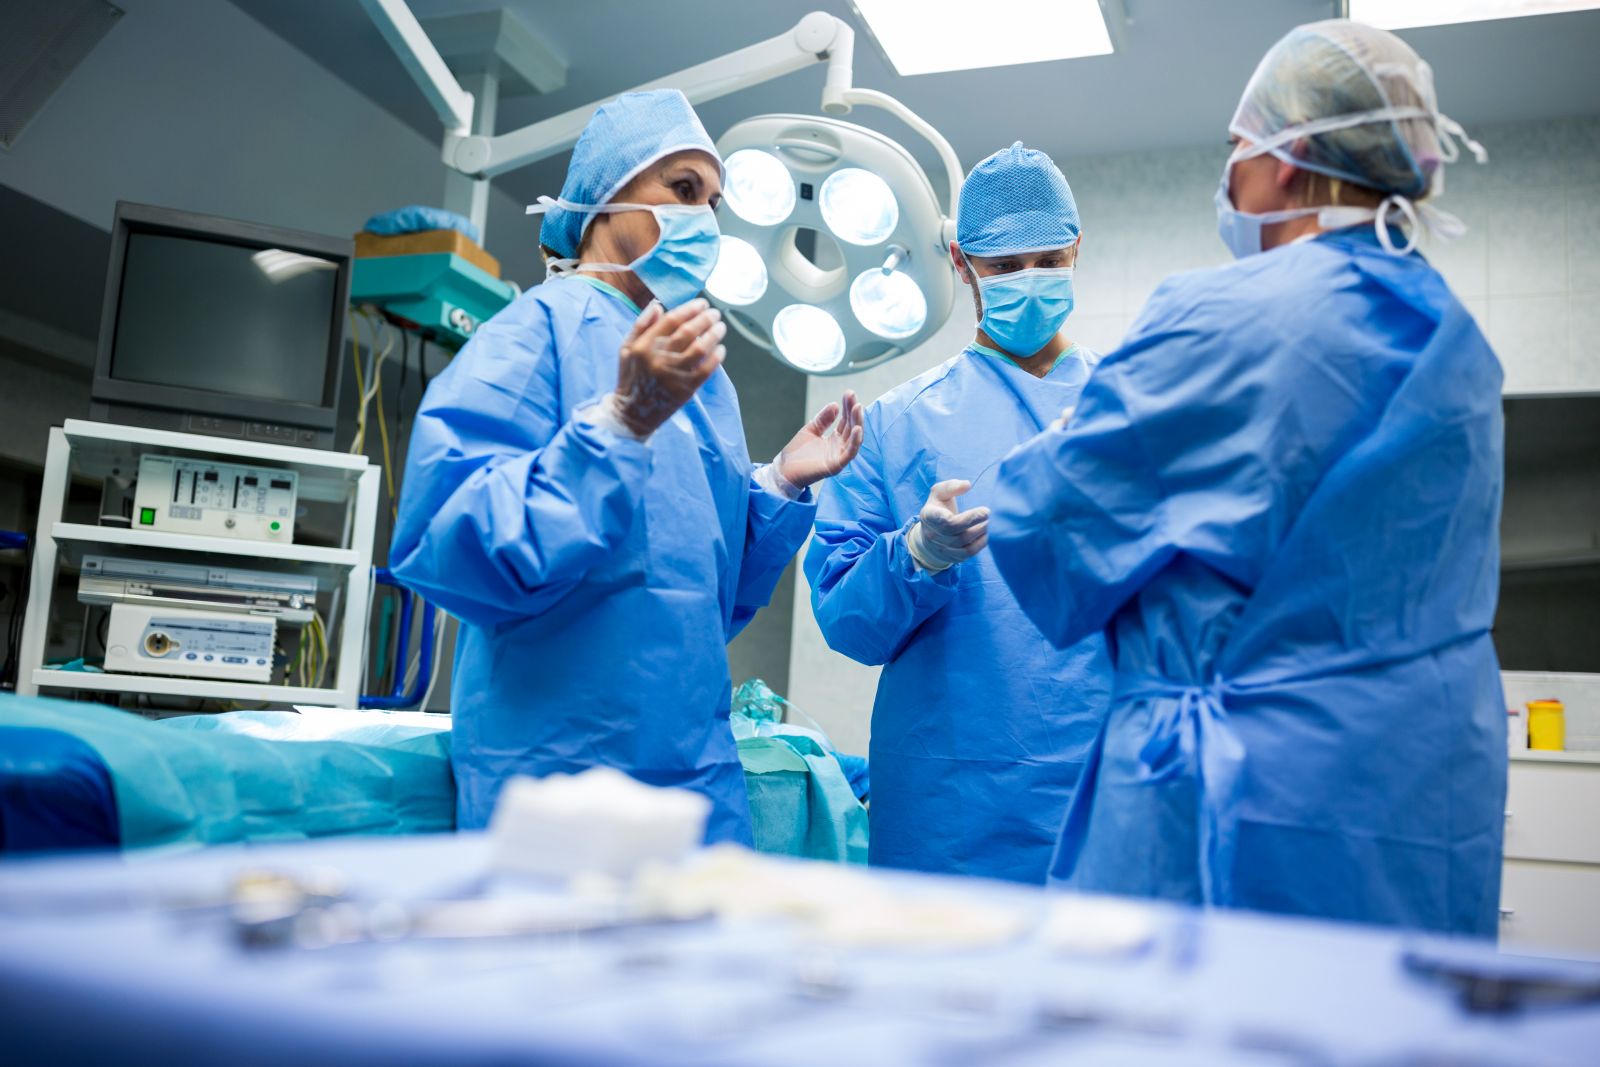 Онкологічна патологія потребує невідкладної допомоги — хірург про оперування під час карантину